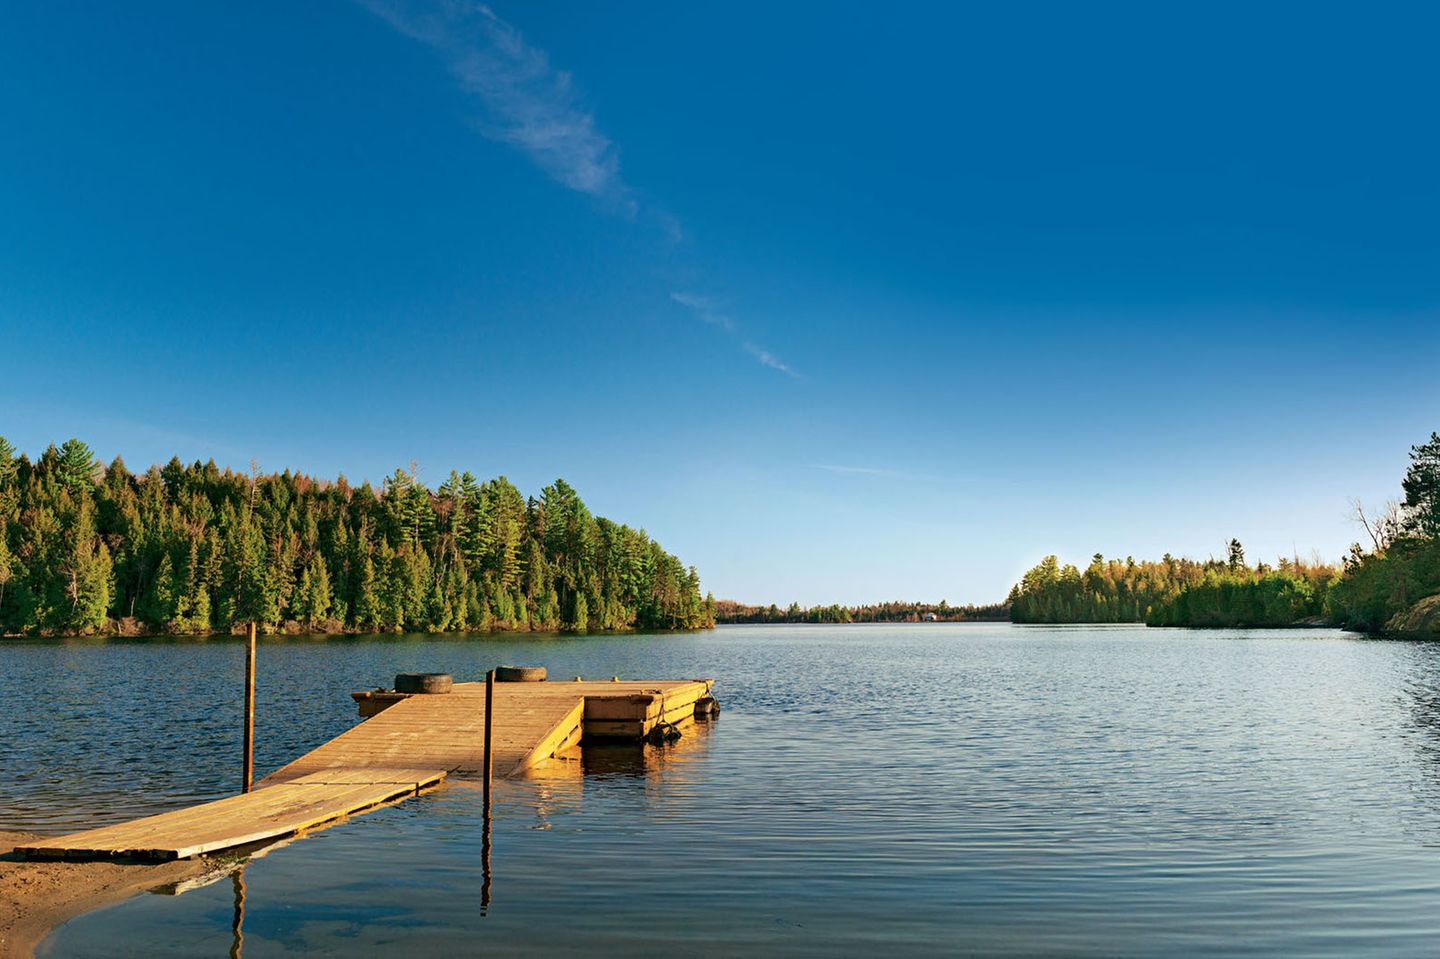 Radreise durch Kanada: Blick auf einen See